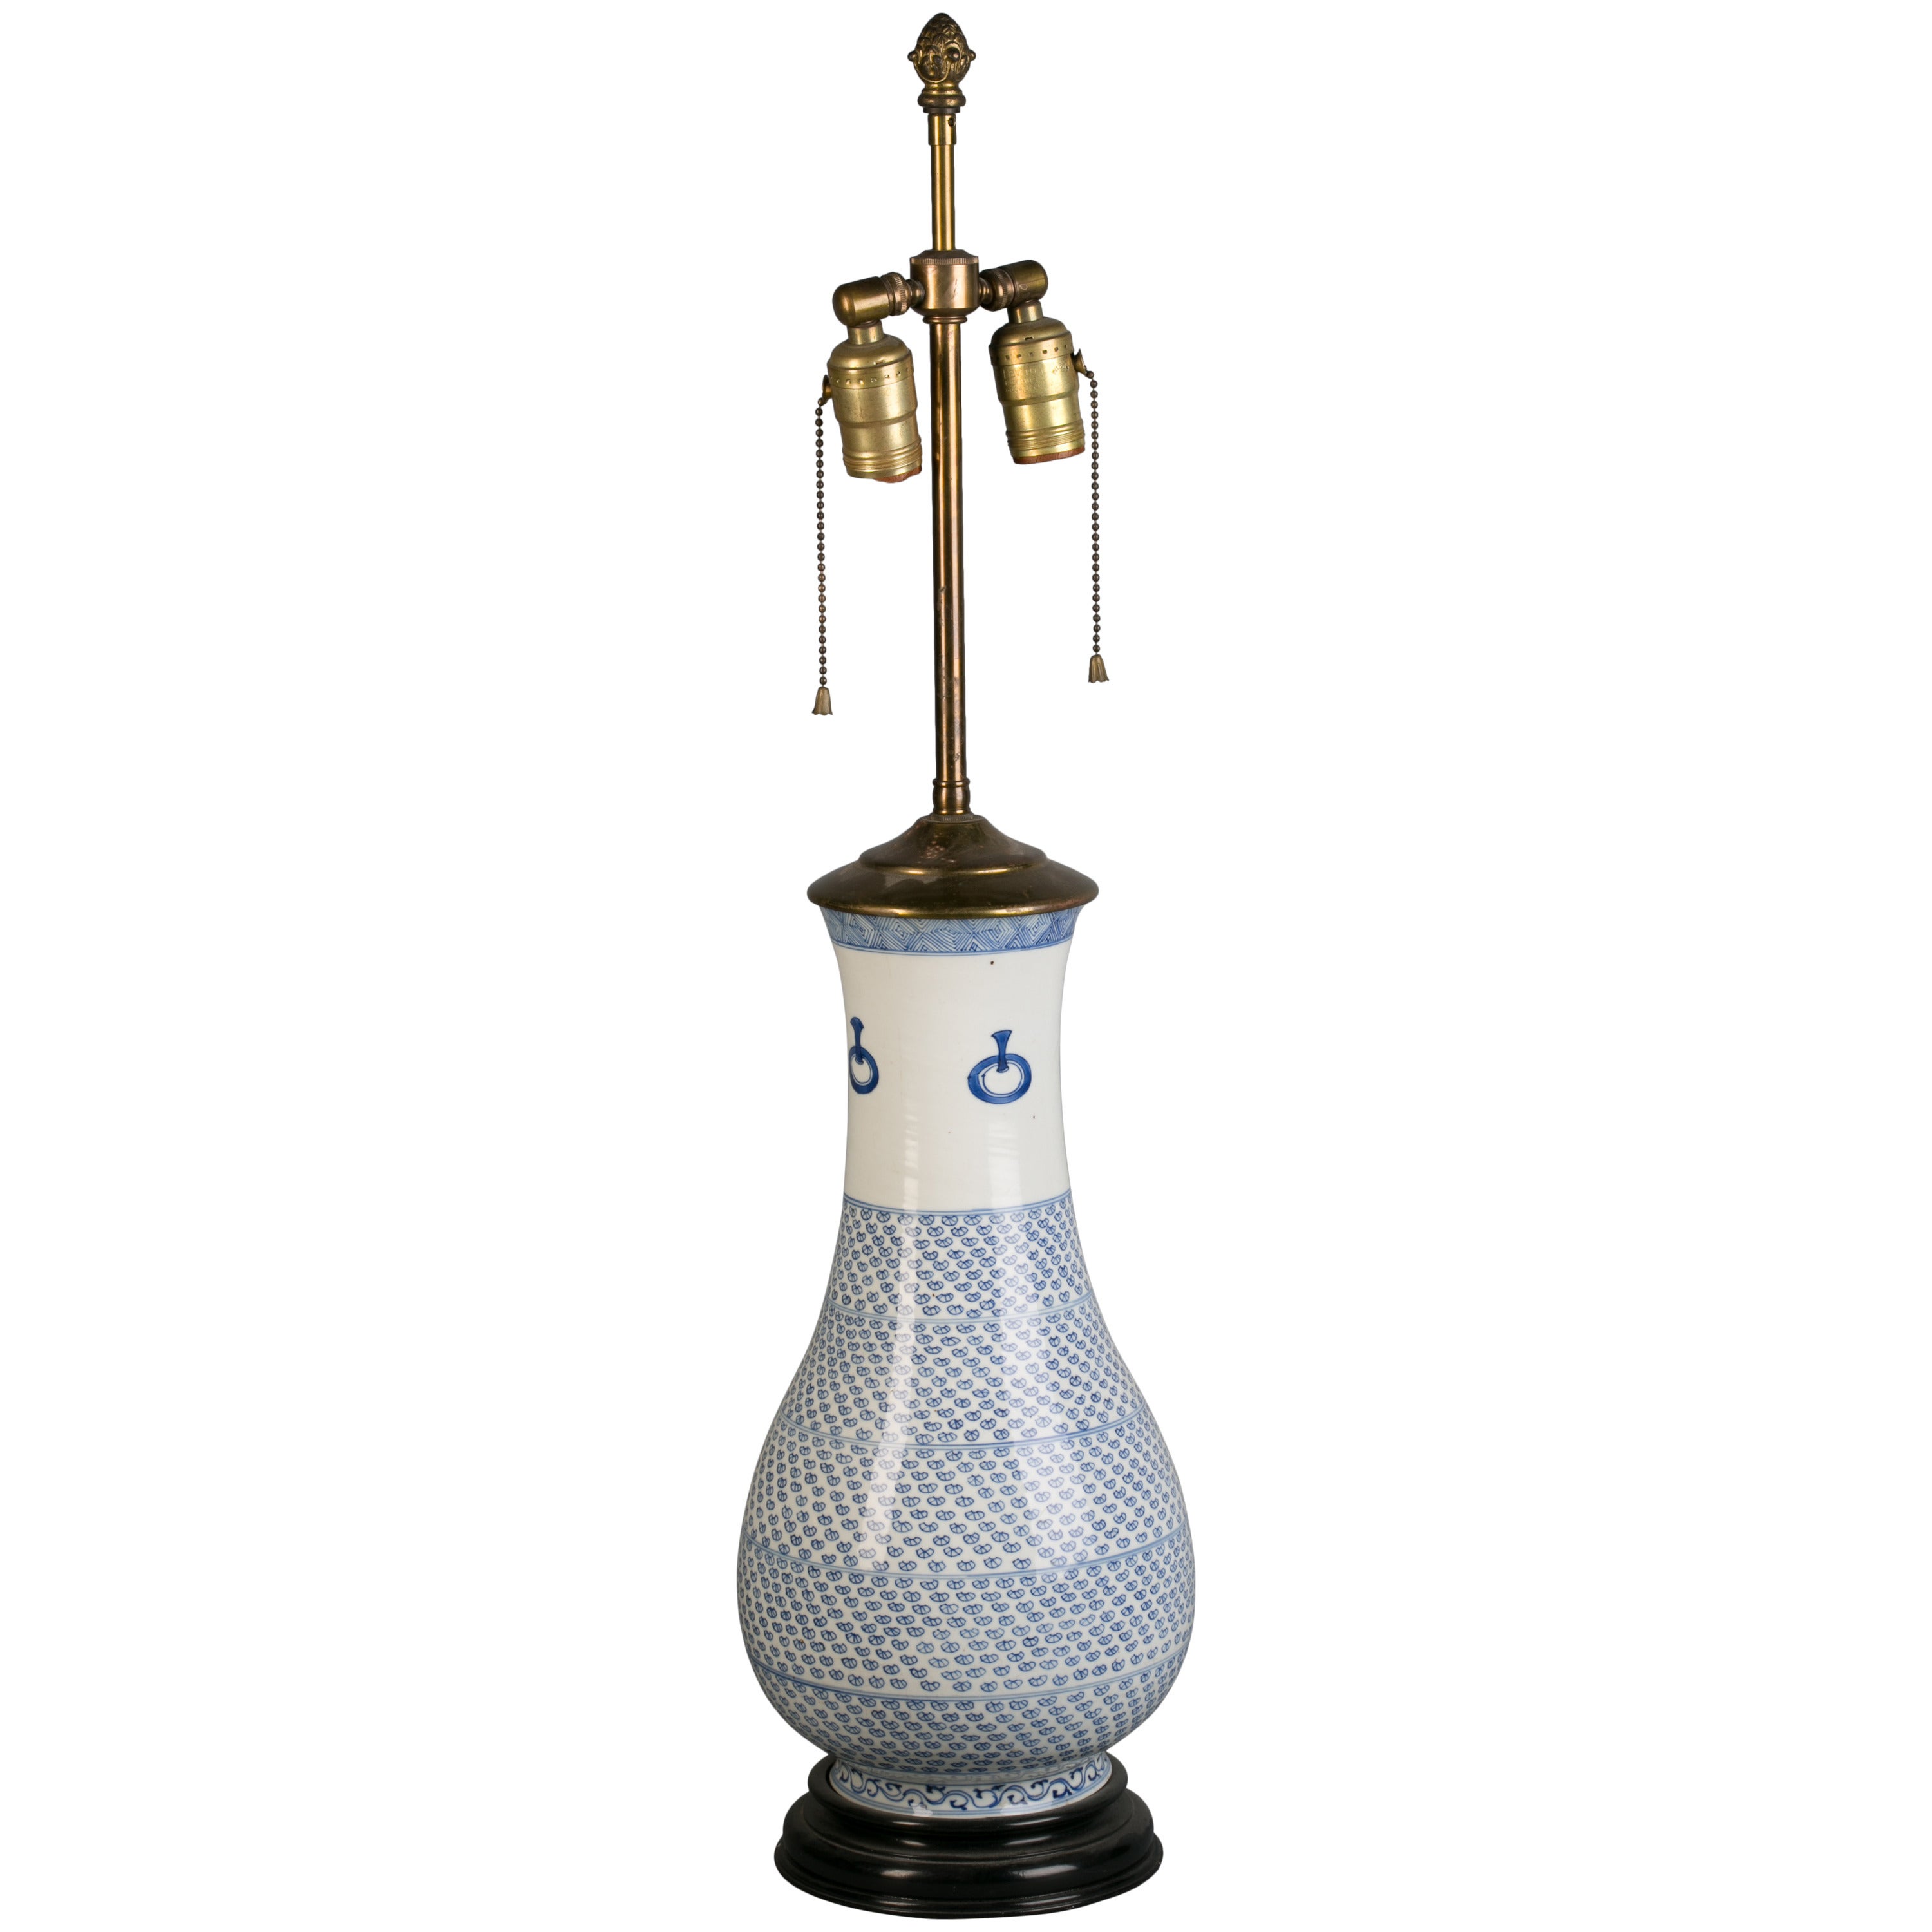 Chinesische blau-weiße Vase als Lampe montiert, Kang Hsi, um 1720